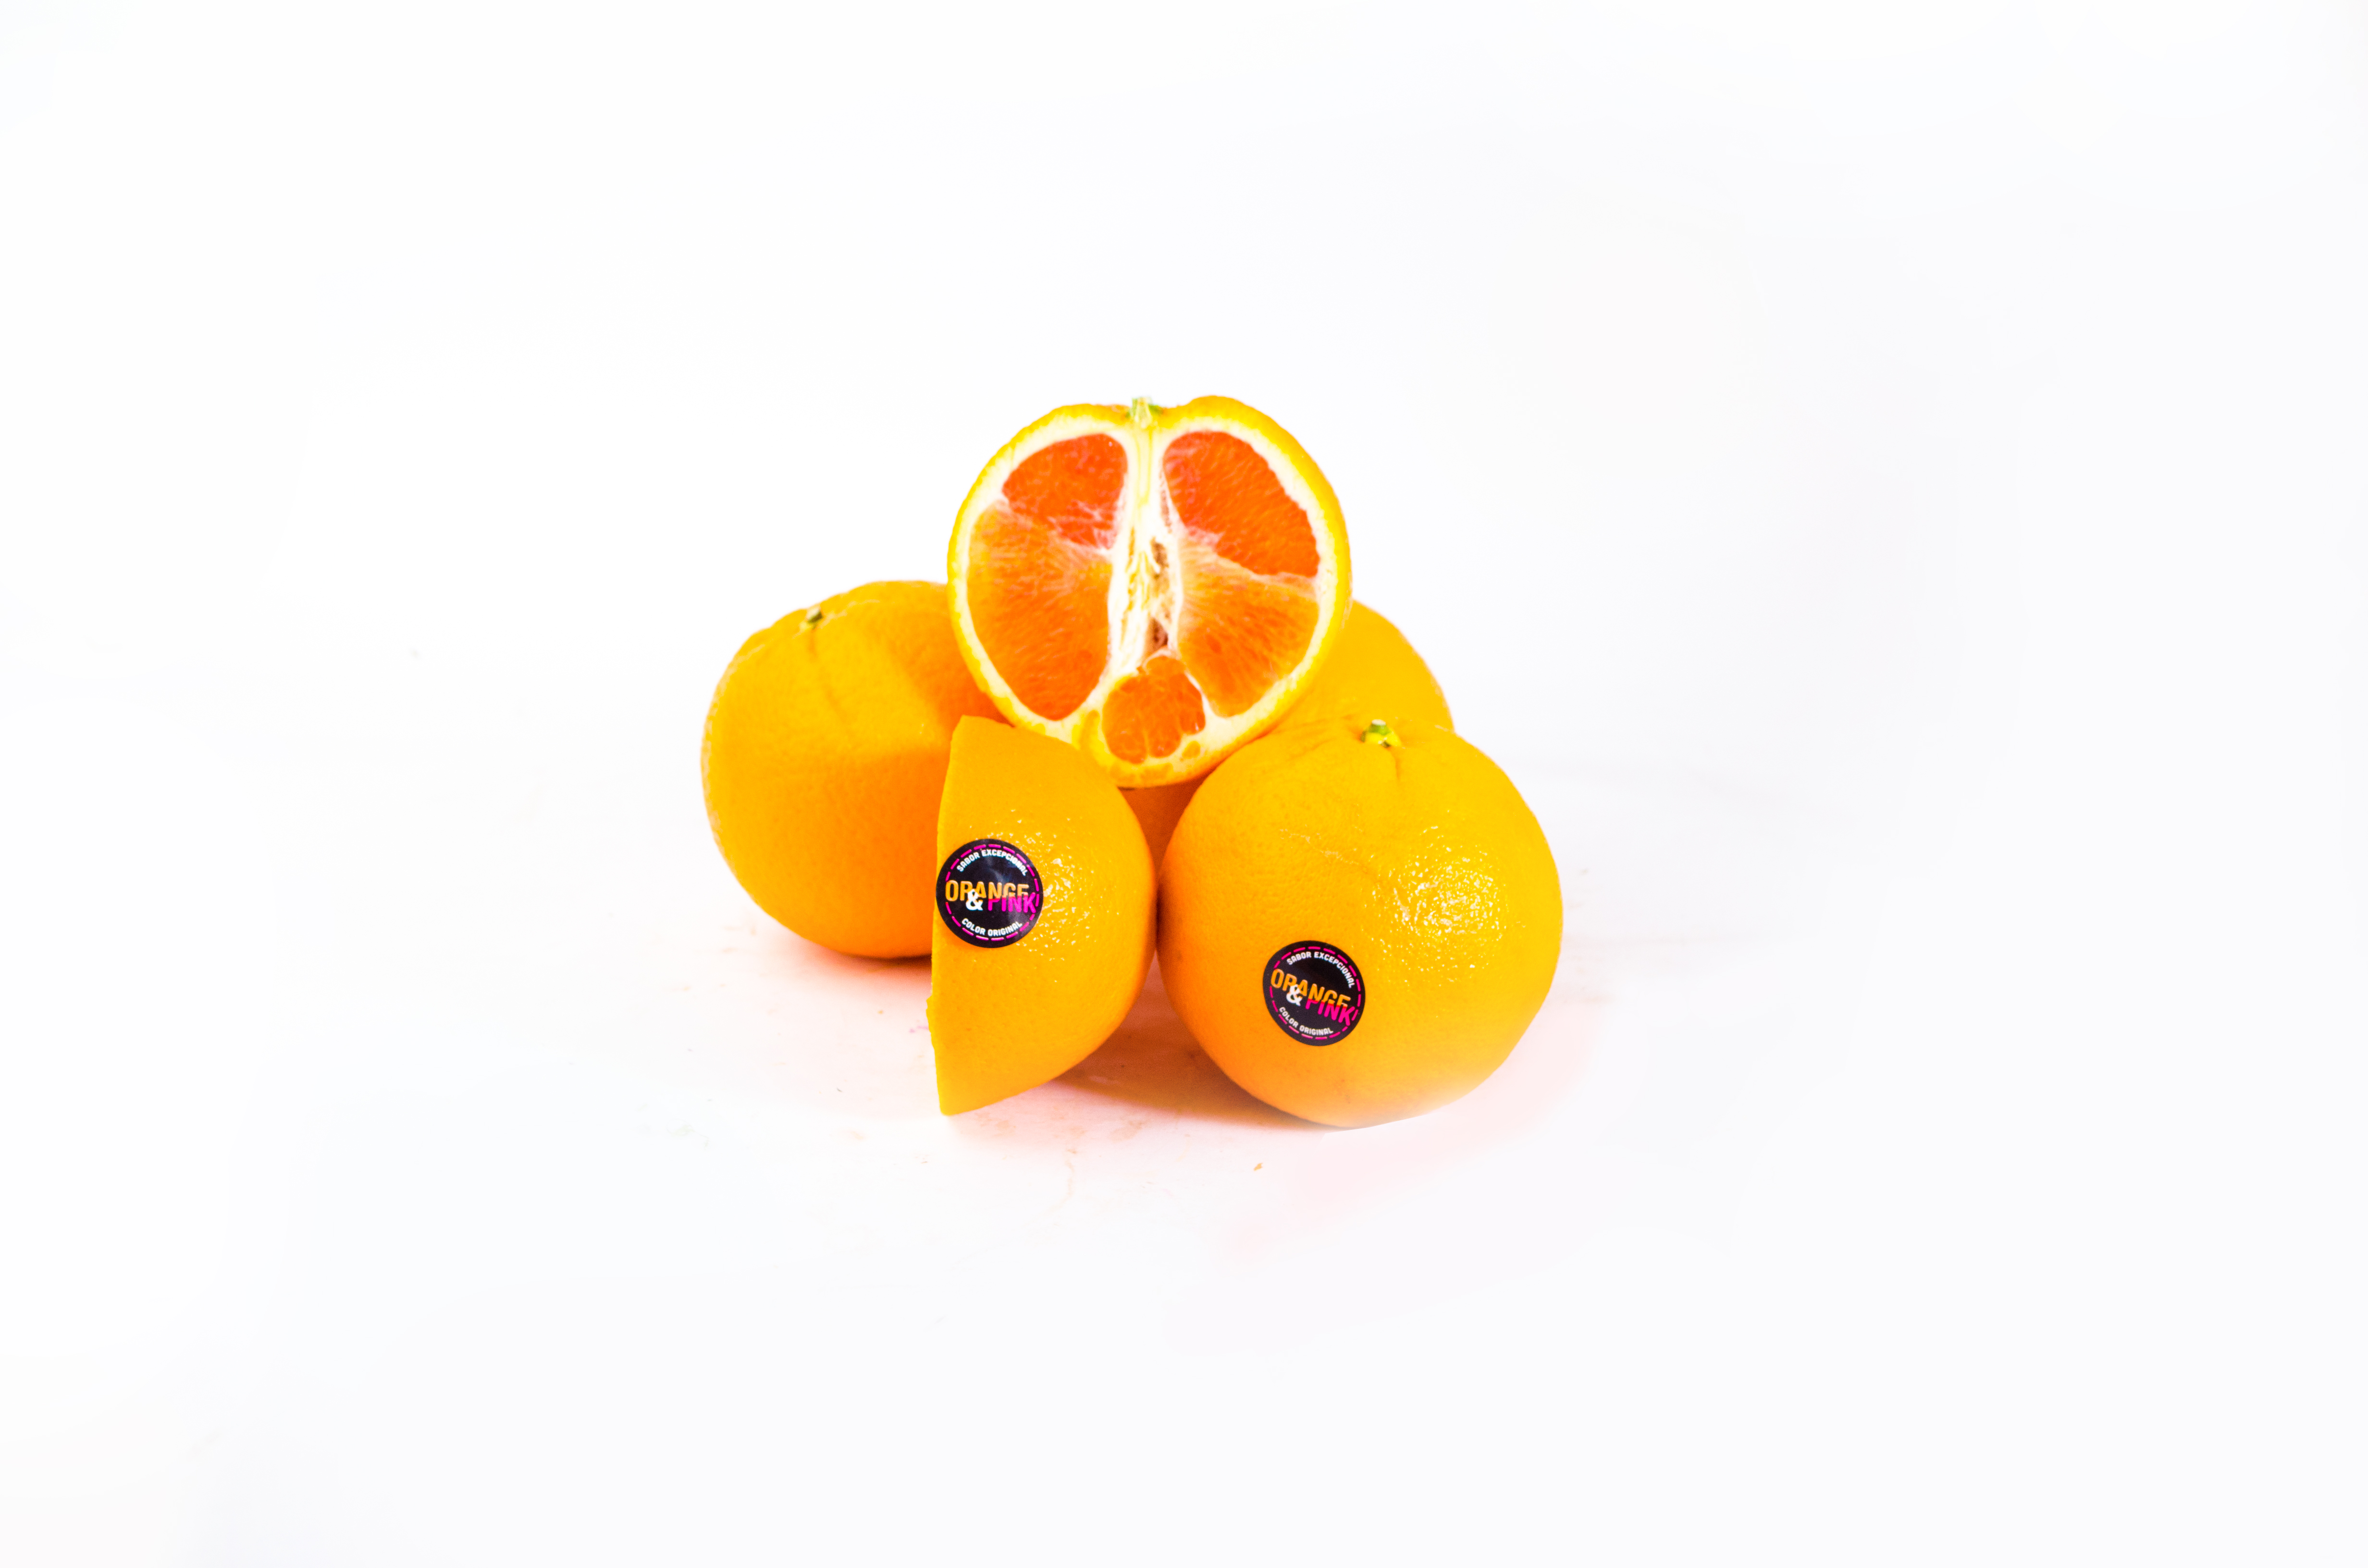 Orangen Caracara La Comba